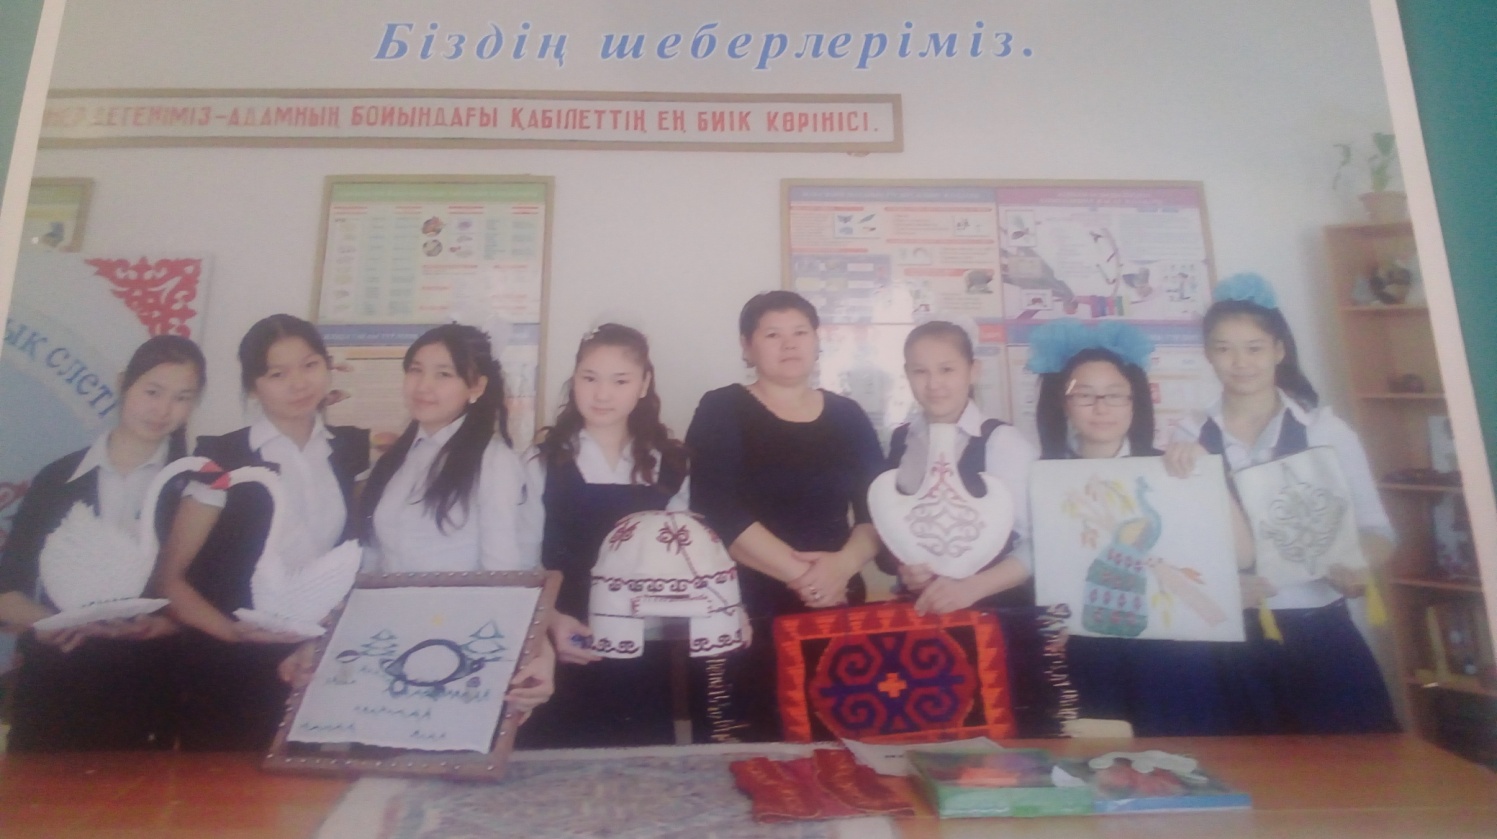 Разработка на казакском языке Ұстаз атына лайық